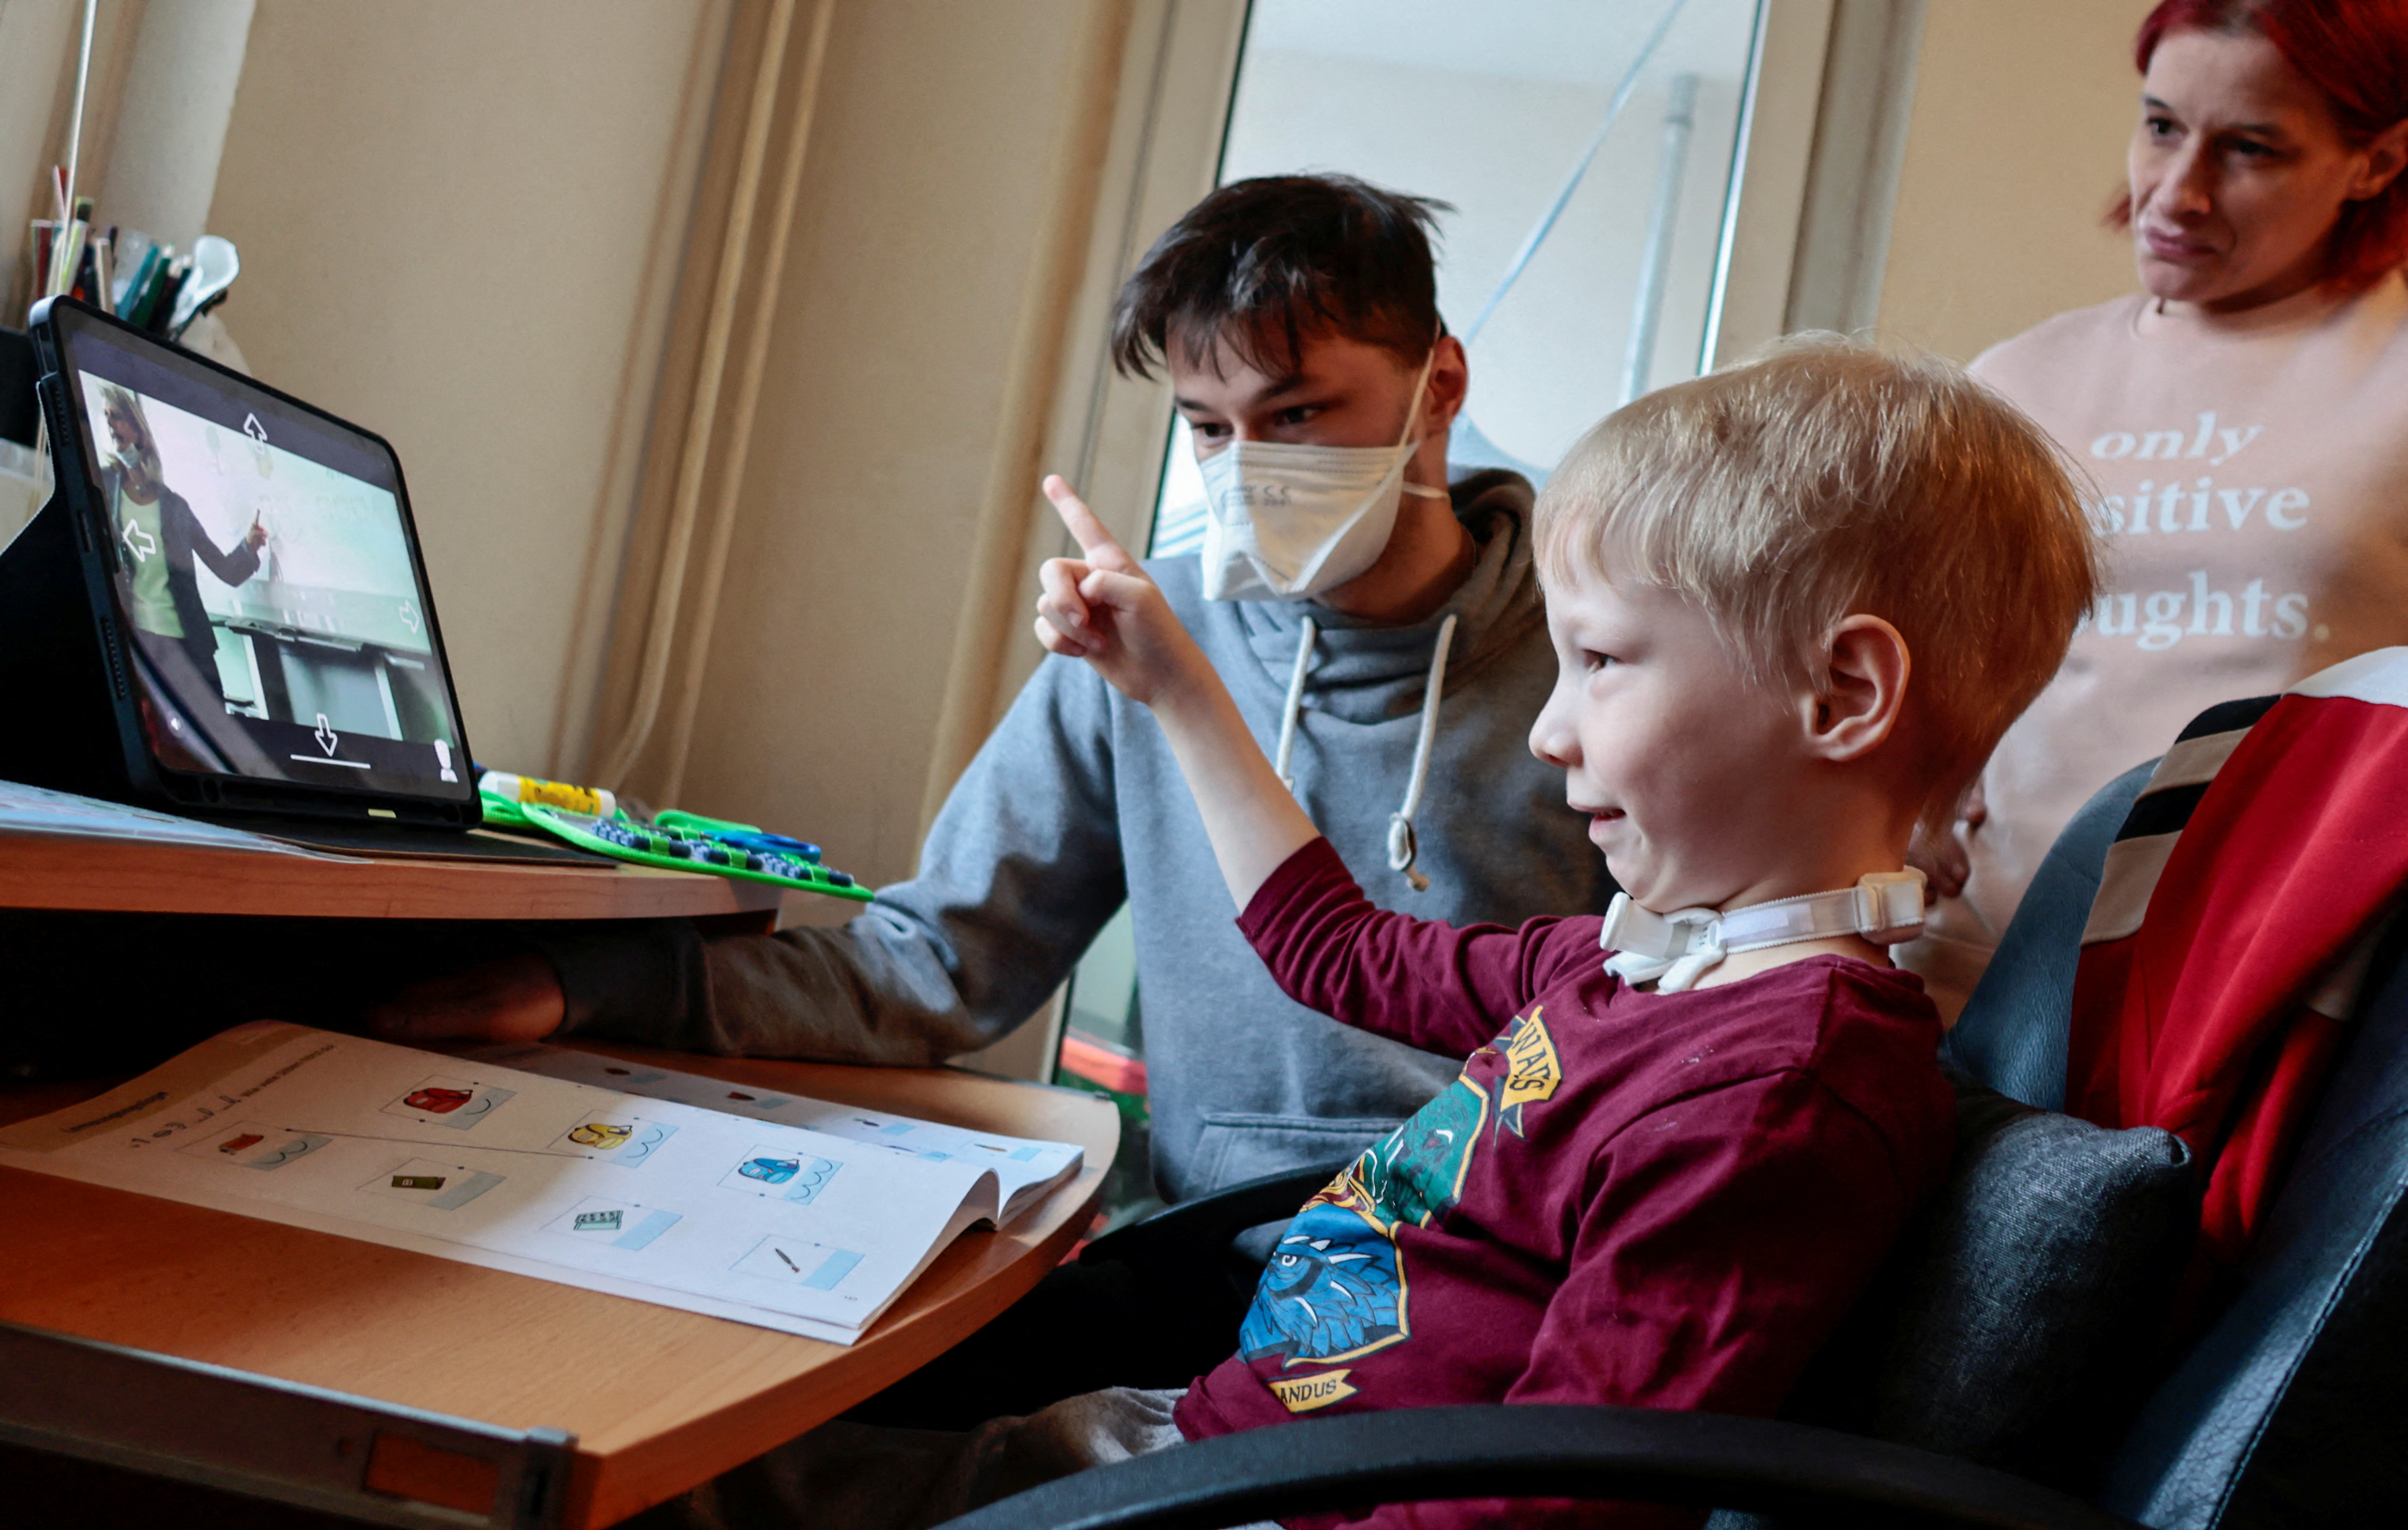 Седемгодишен ученик Джошуа посещава училищен урок, седнал до майка си Симоне и брат си Мартин, чрез робот-аватар в класната си стая, Берлин, Германия, 13 януари 2022 г. REUTERS/Hannibal Hanschke